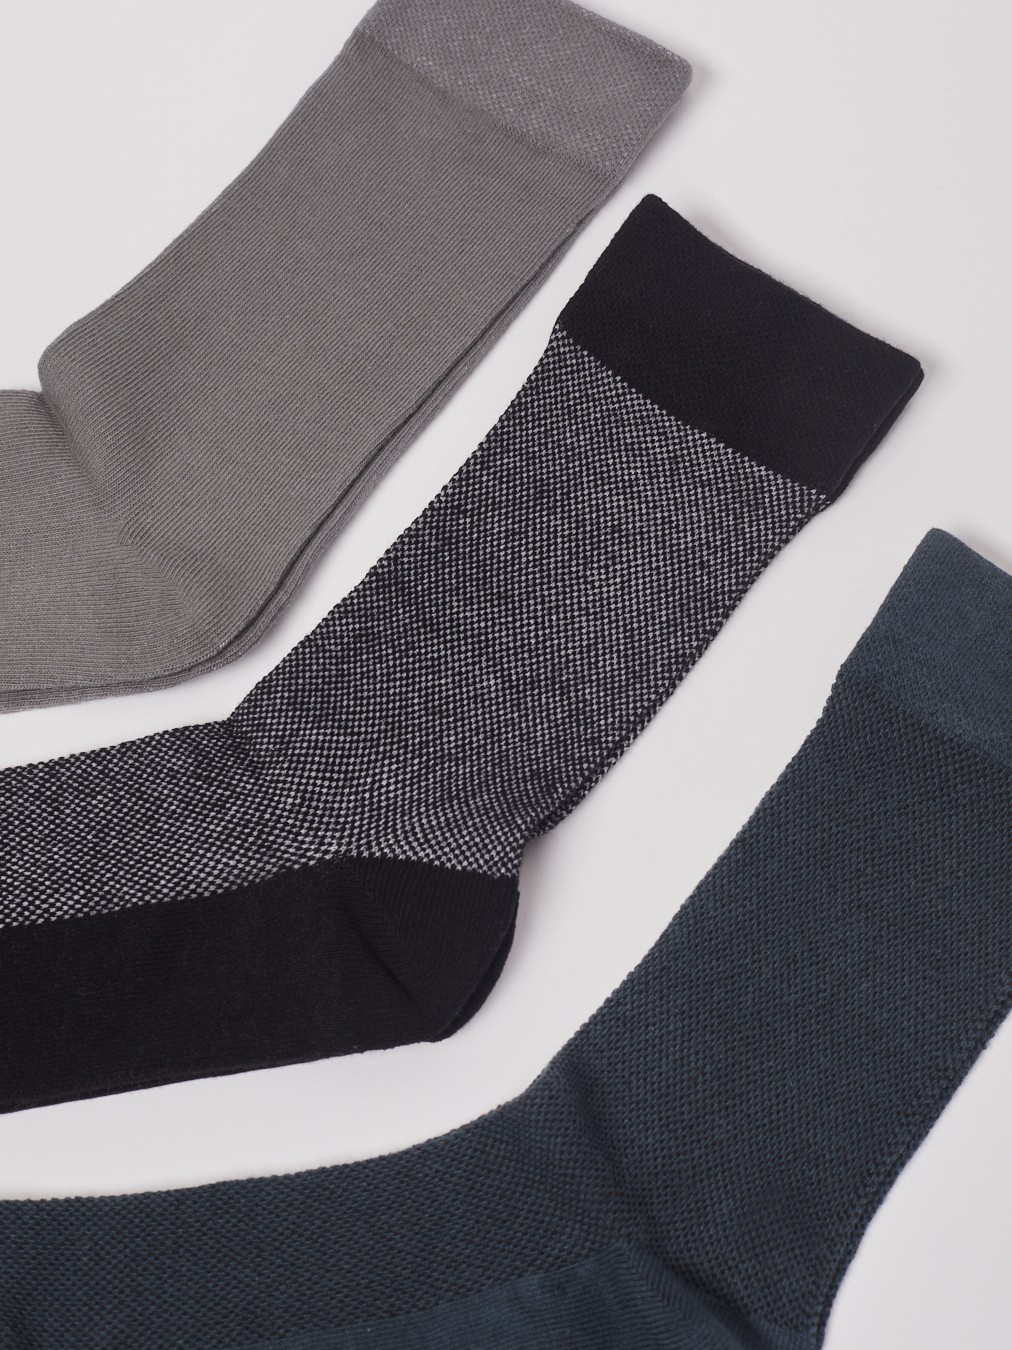 Набор высоких носков (3 пары в комплекте) zolla 01311995P155, цвет серый, размер 25-27 - фото 2